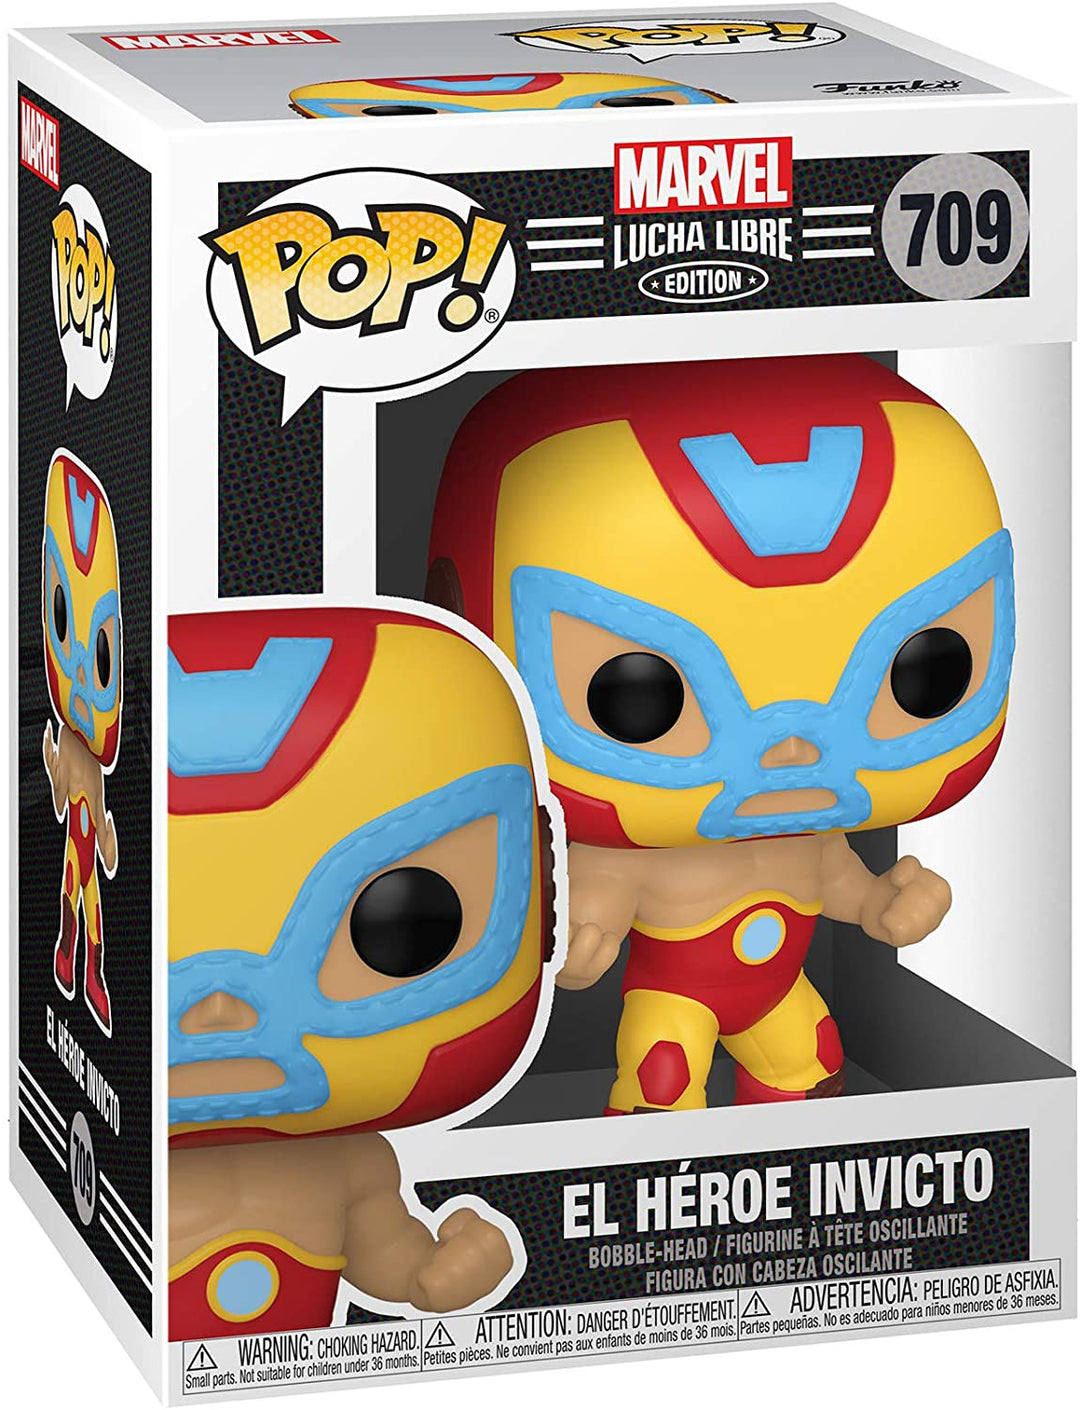 Marvel Lucha Libre Edition El Heroe Invicto Funko 53871 Pop! Vinyl #709